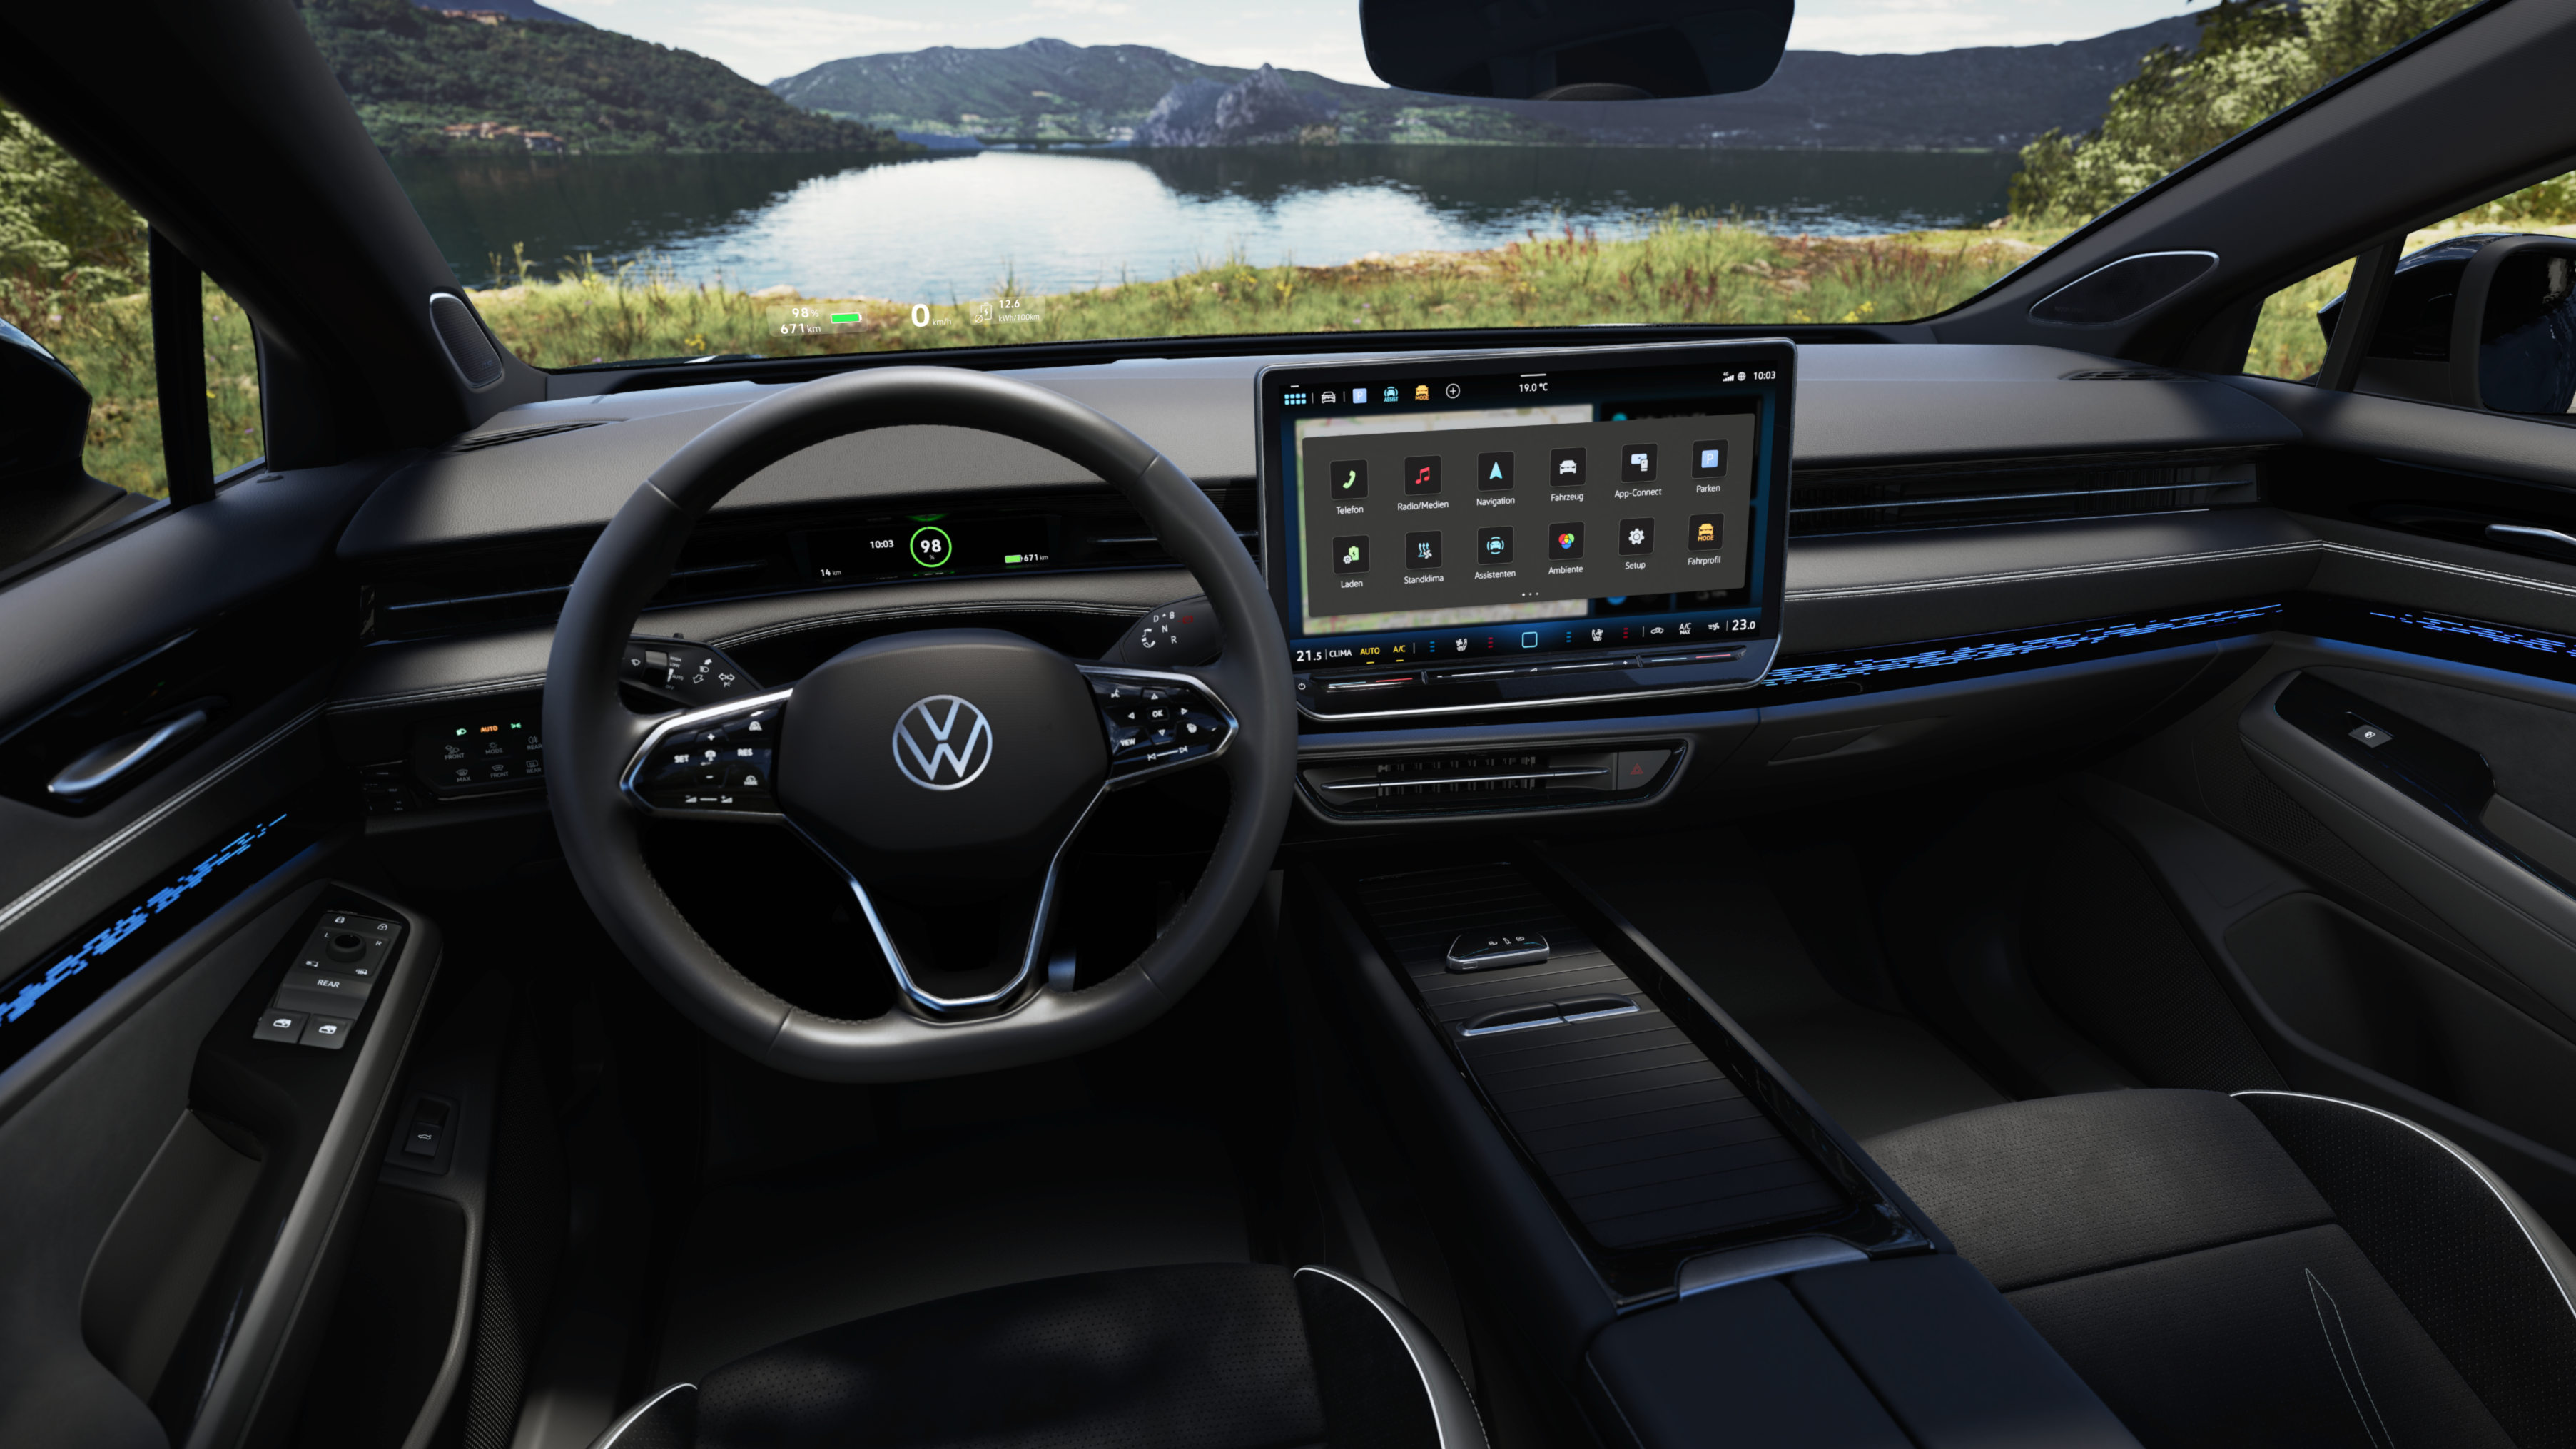 Blick in das Cockpit eines Volkswagen